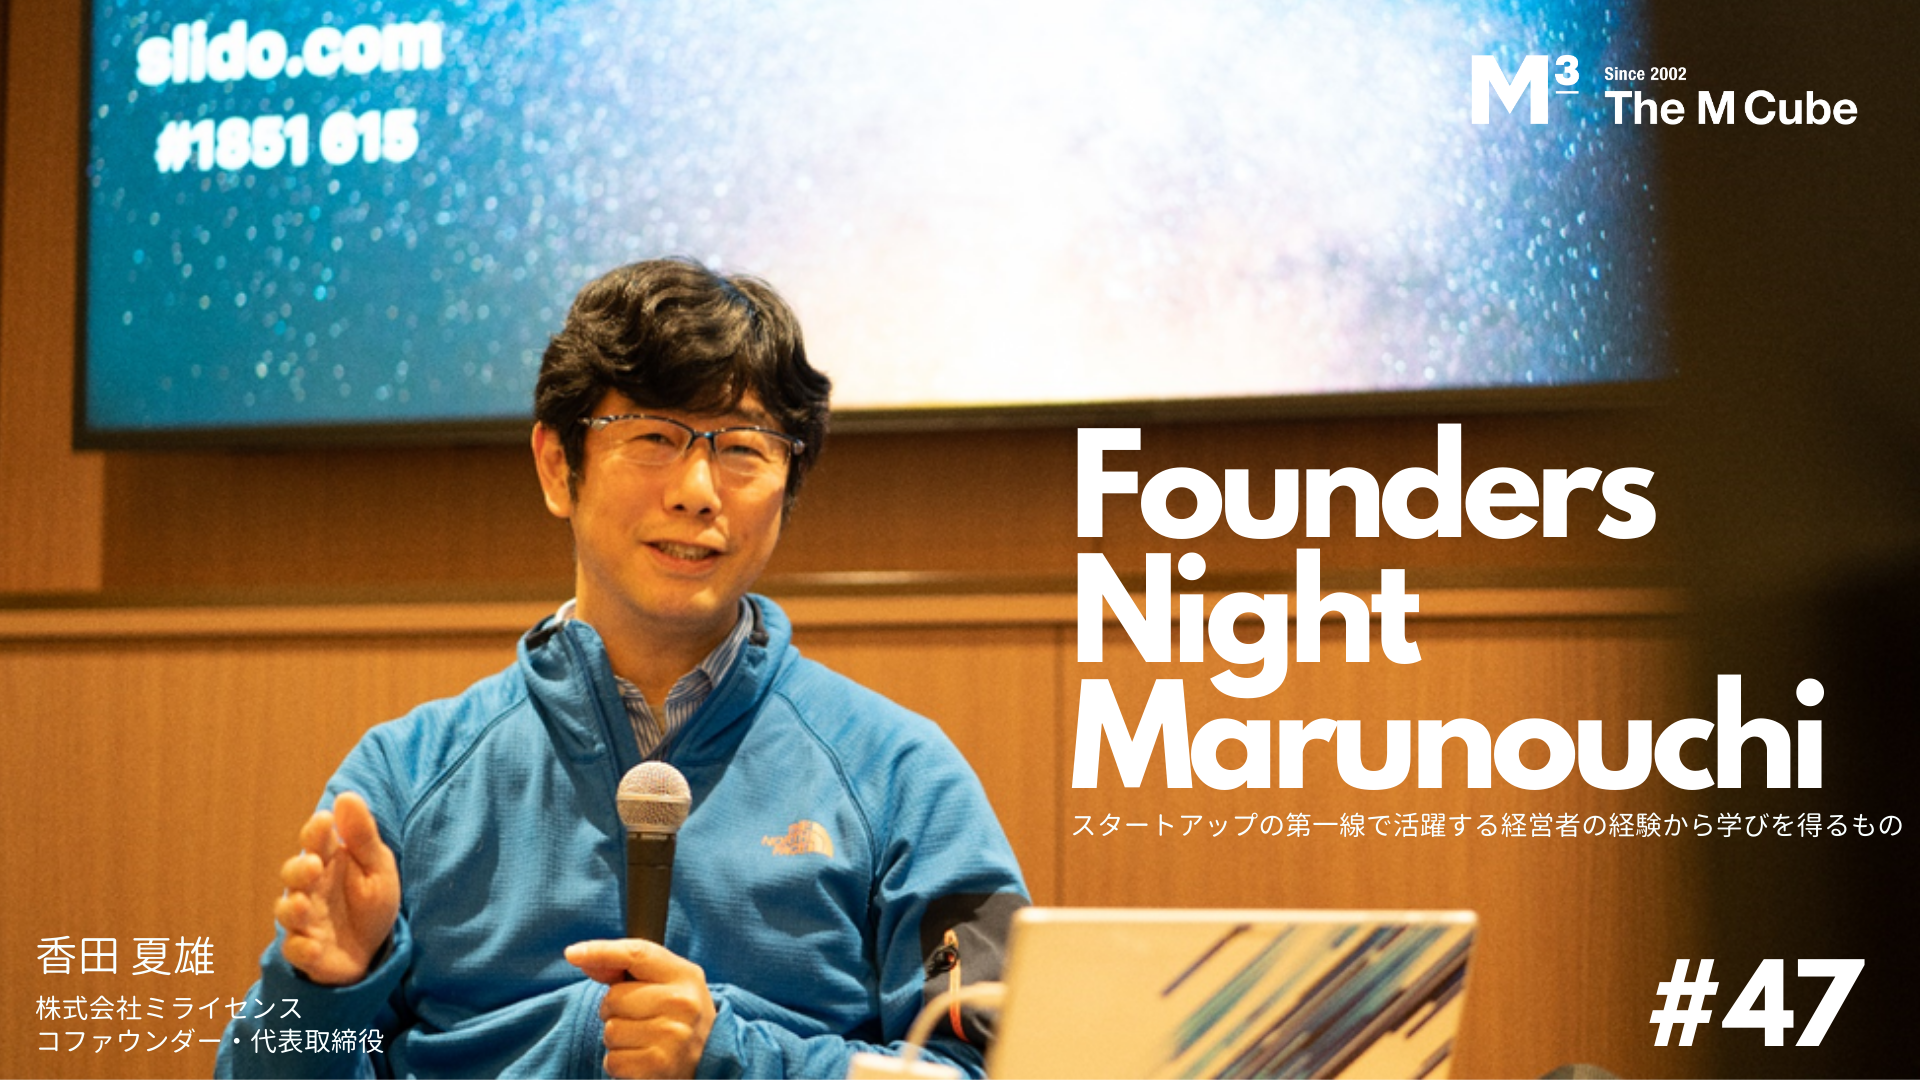 【イベントレポート公開】Founders Night Marunouchi #47 ミライセンス 代表取締役 香田夏雄さん編